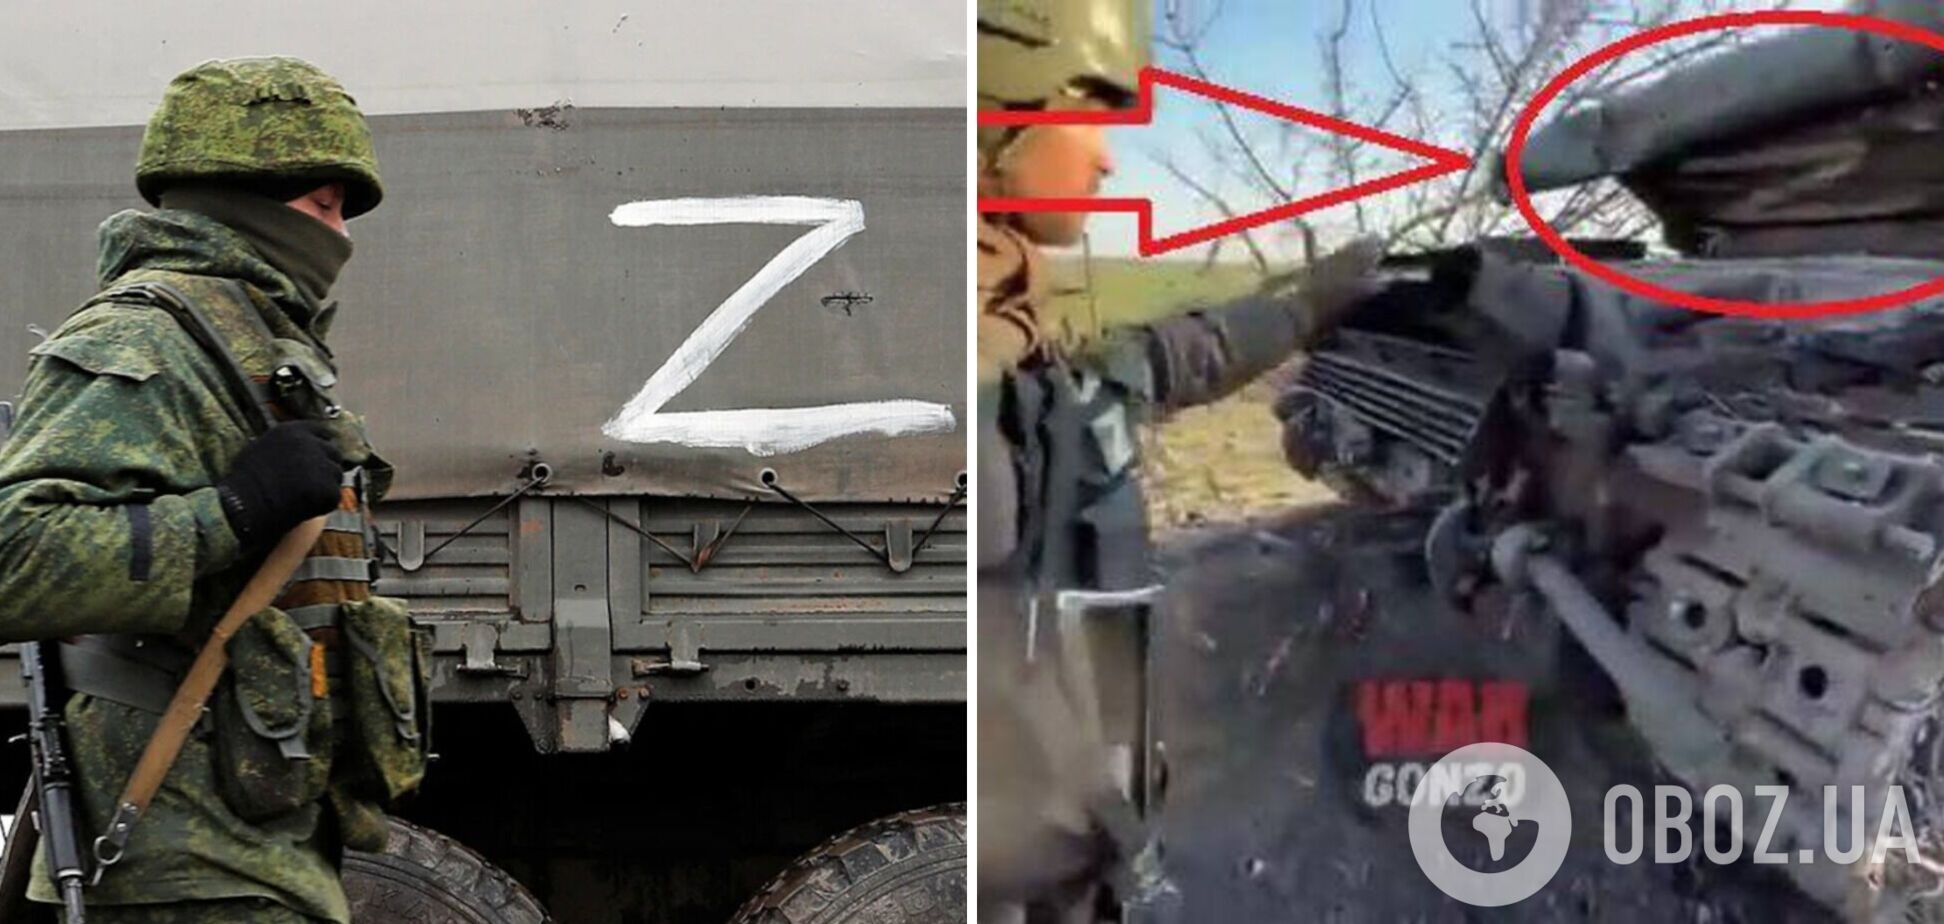 Российские пропагандисты устроили шоу с 'украинским' танком, но забыли стереть рашистский символ Z. Фото и видео